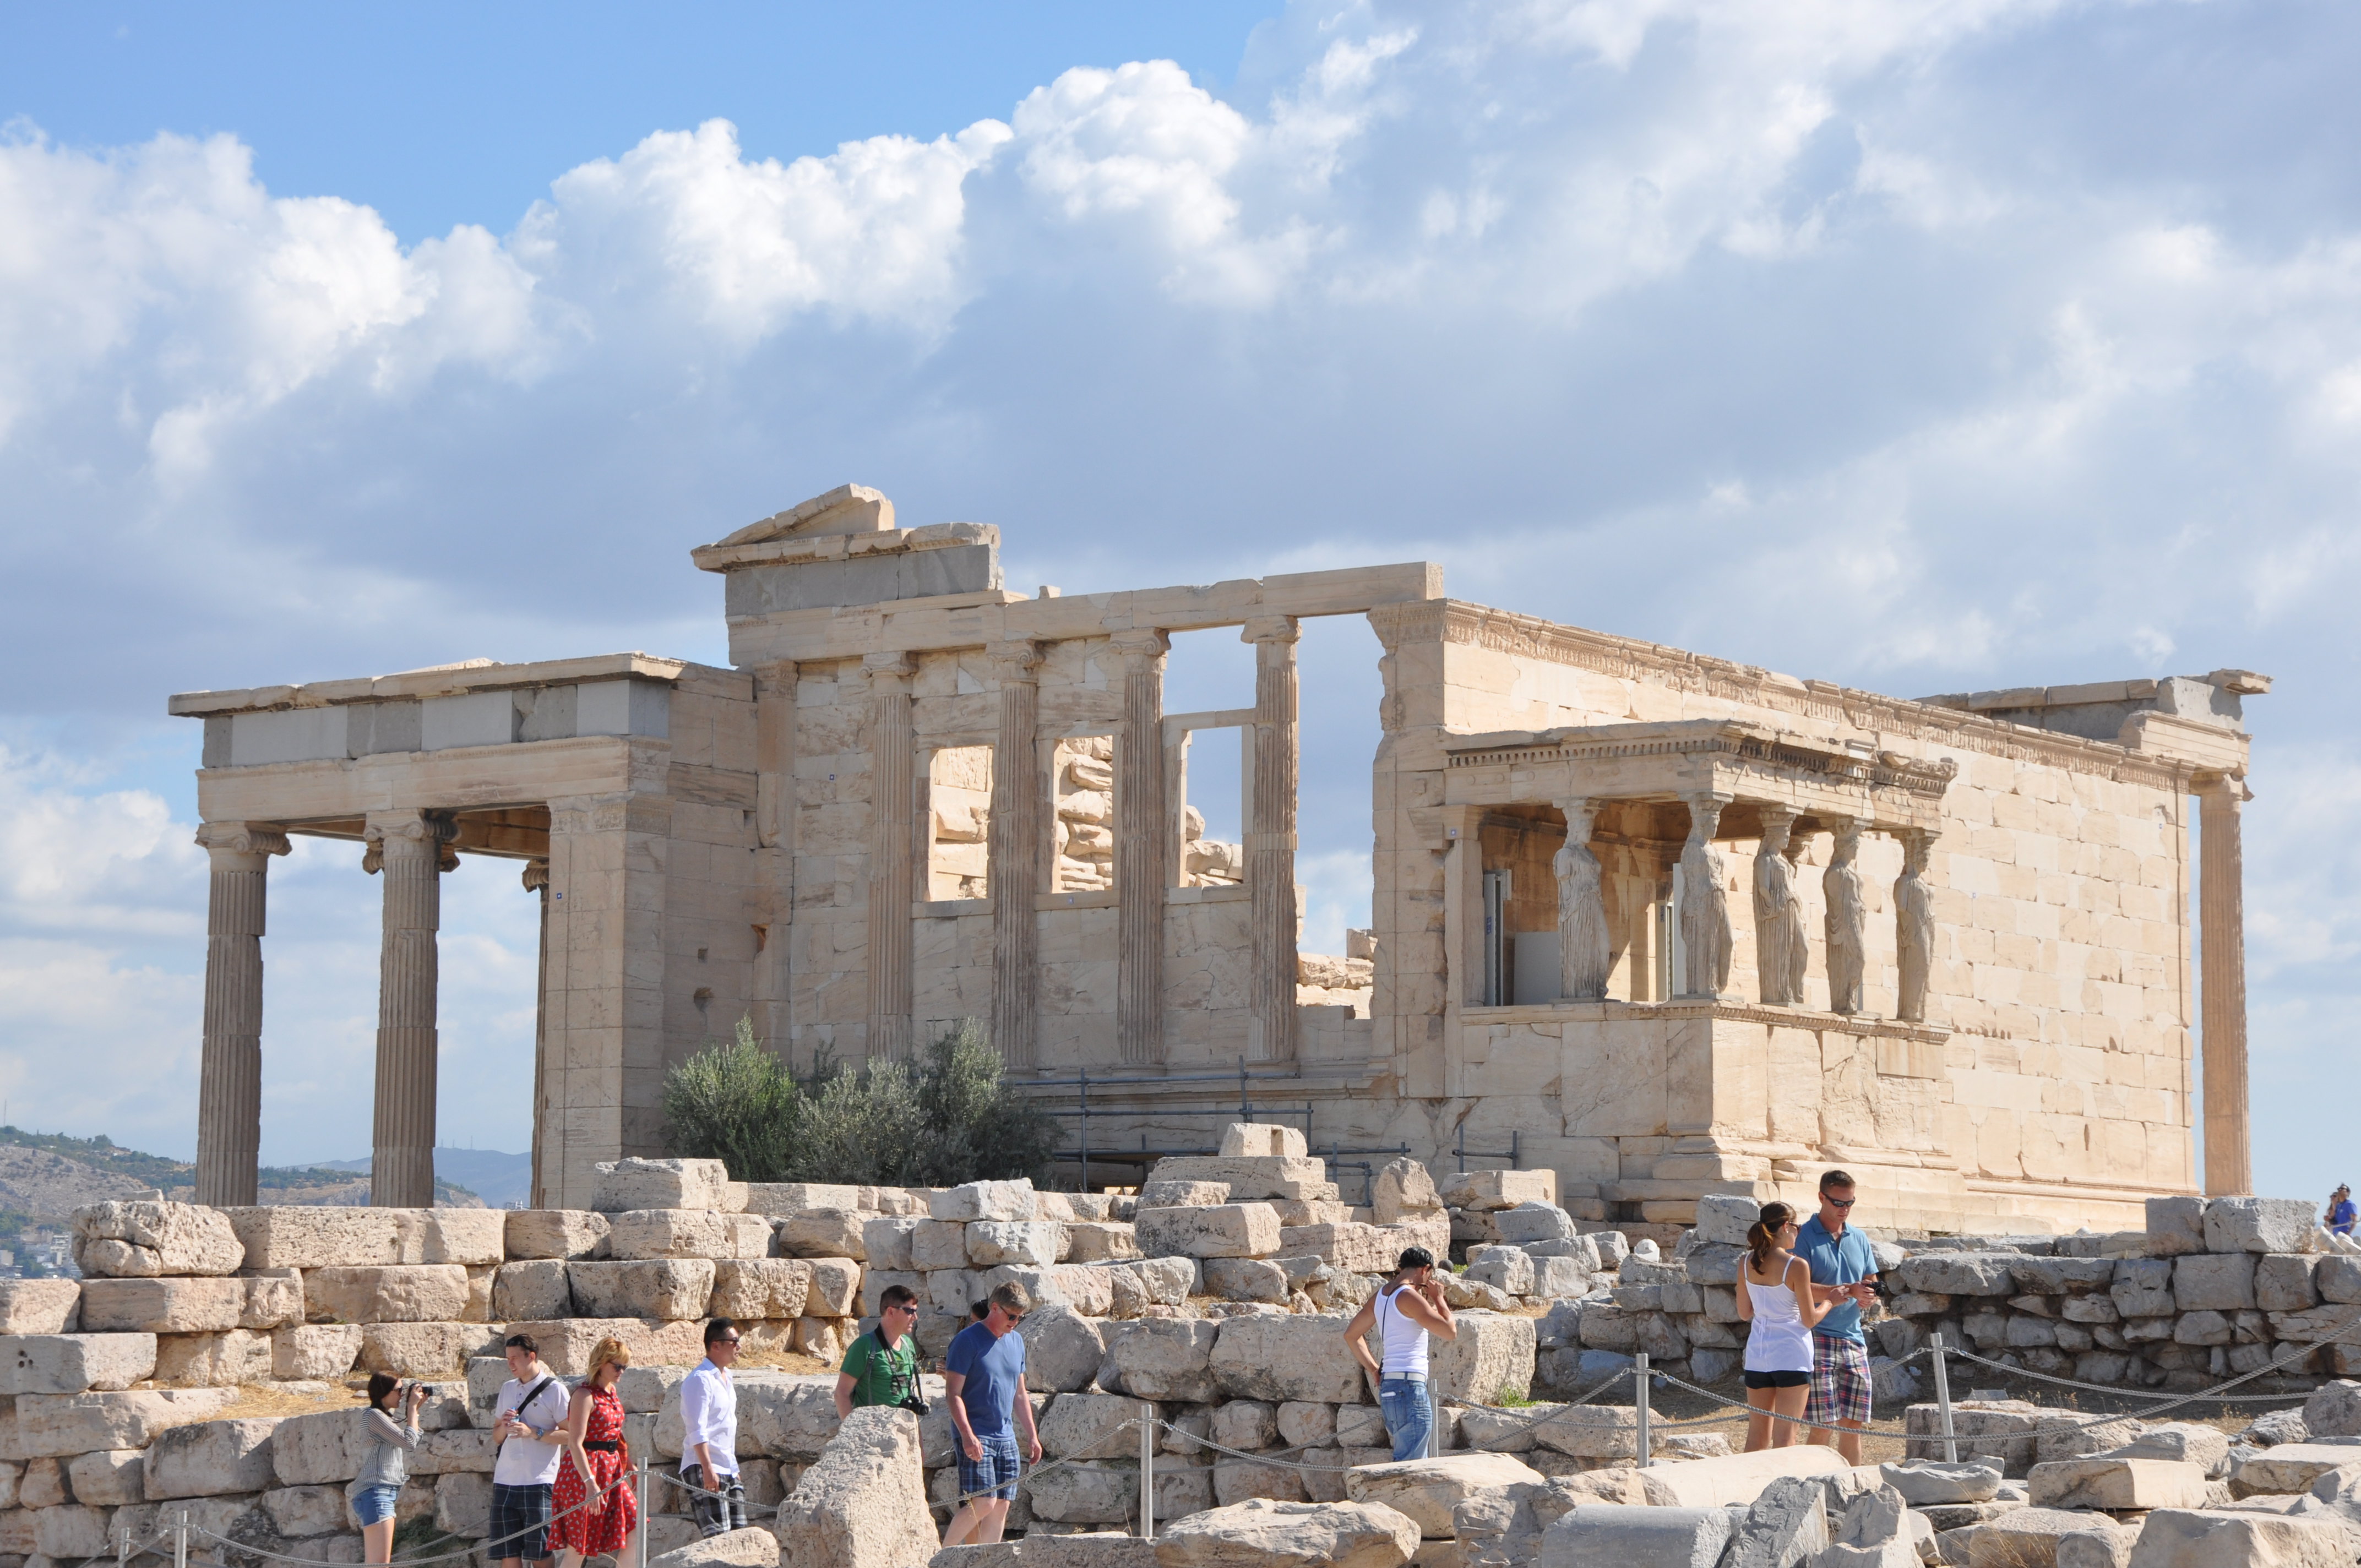 雅典有哪些著名景点图片